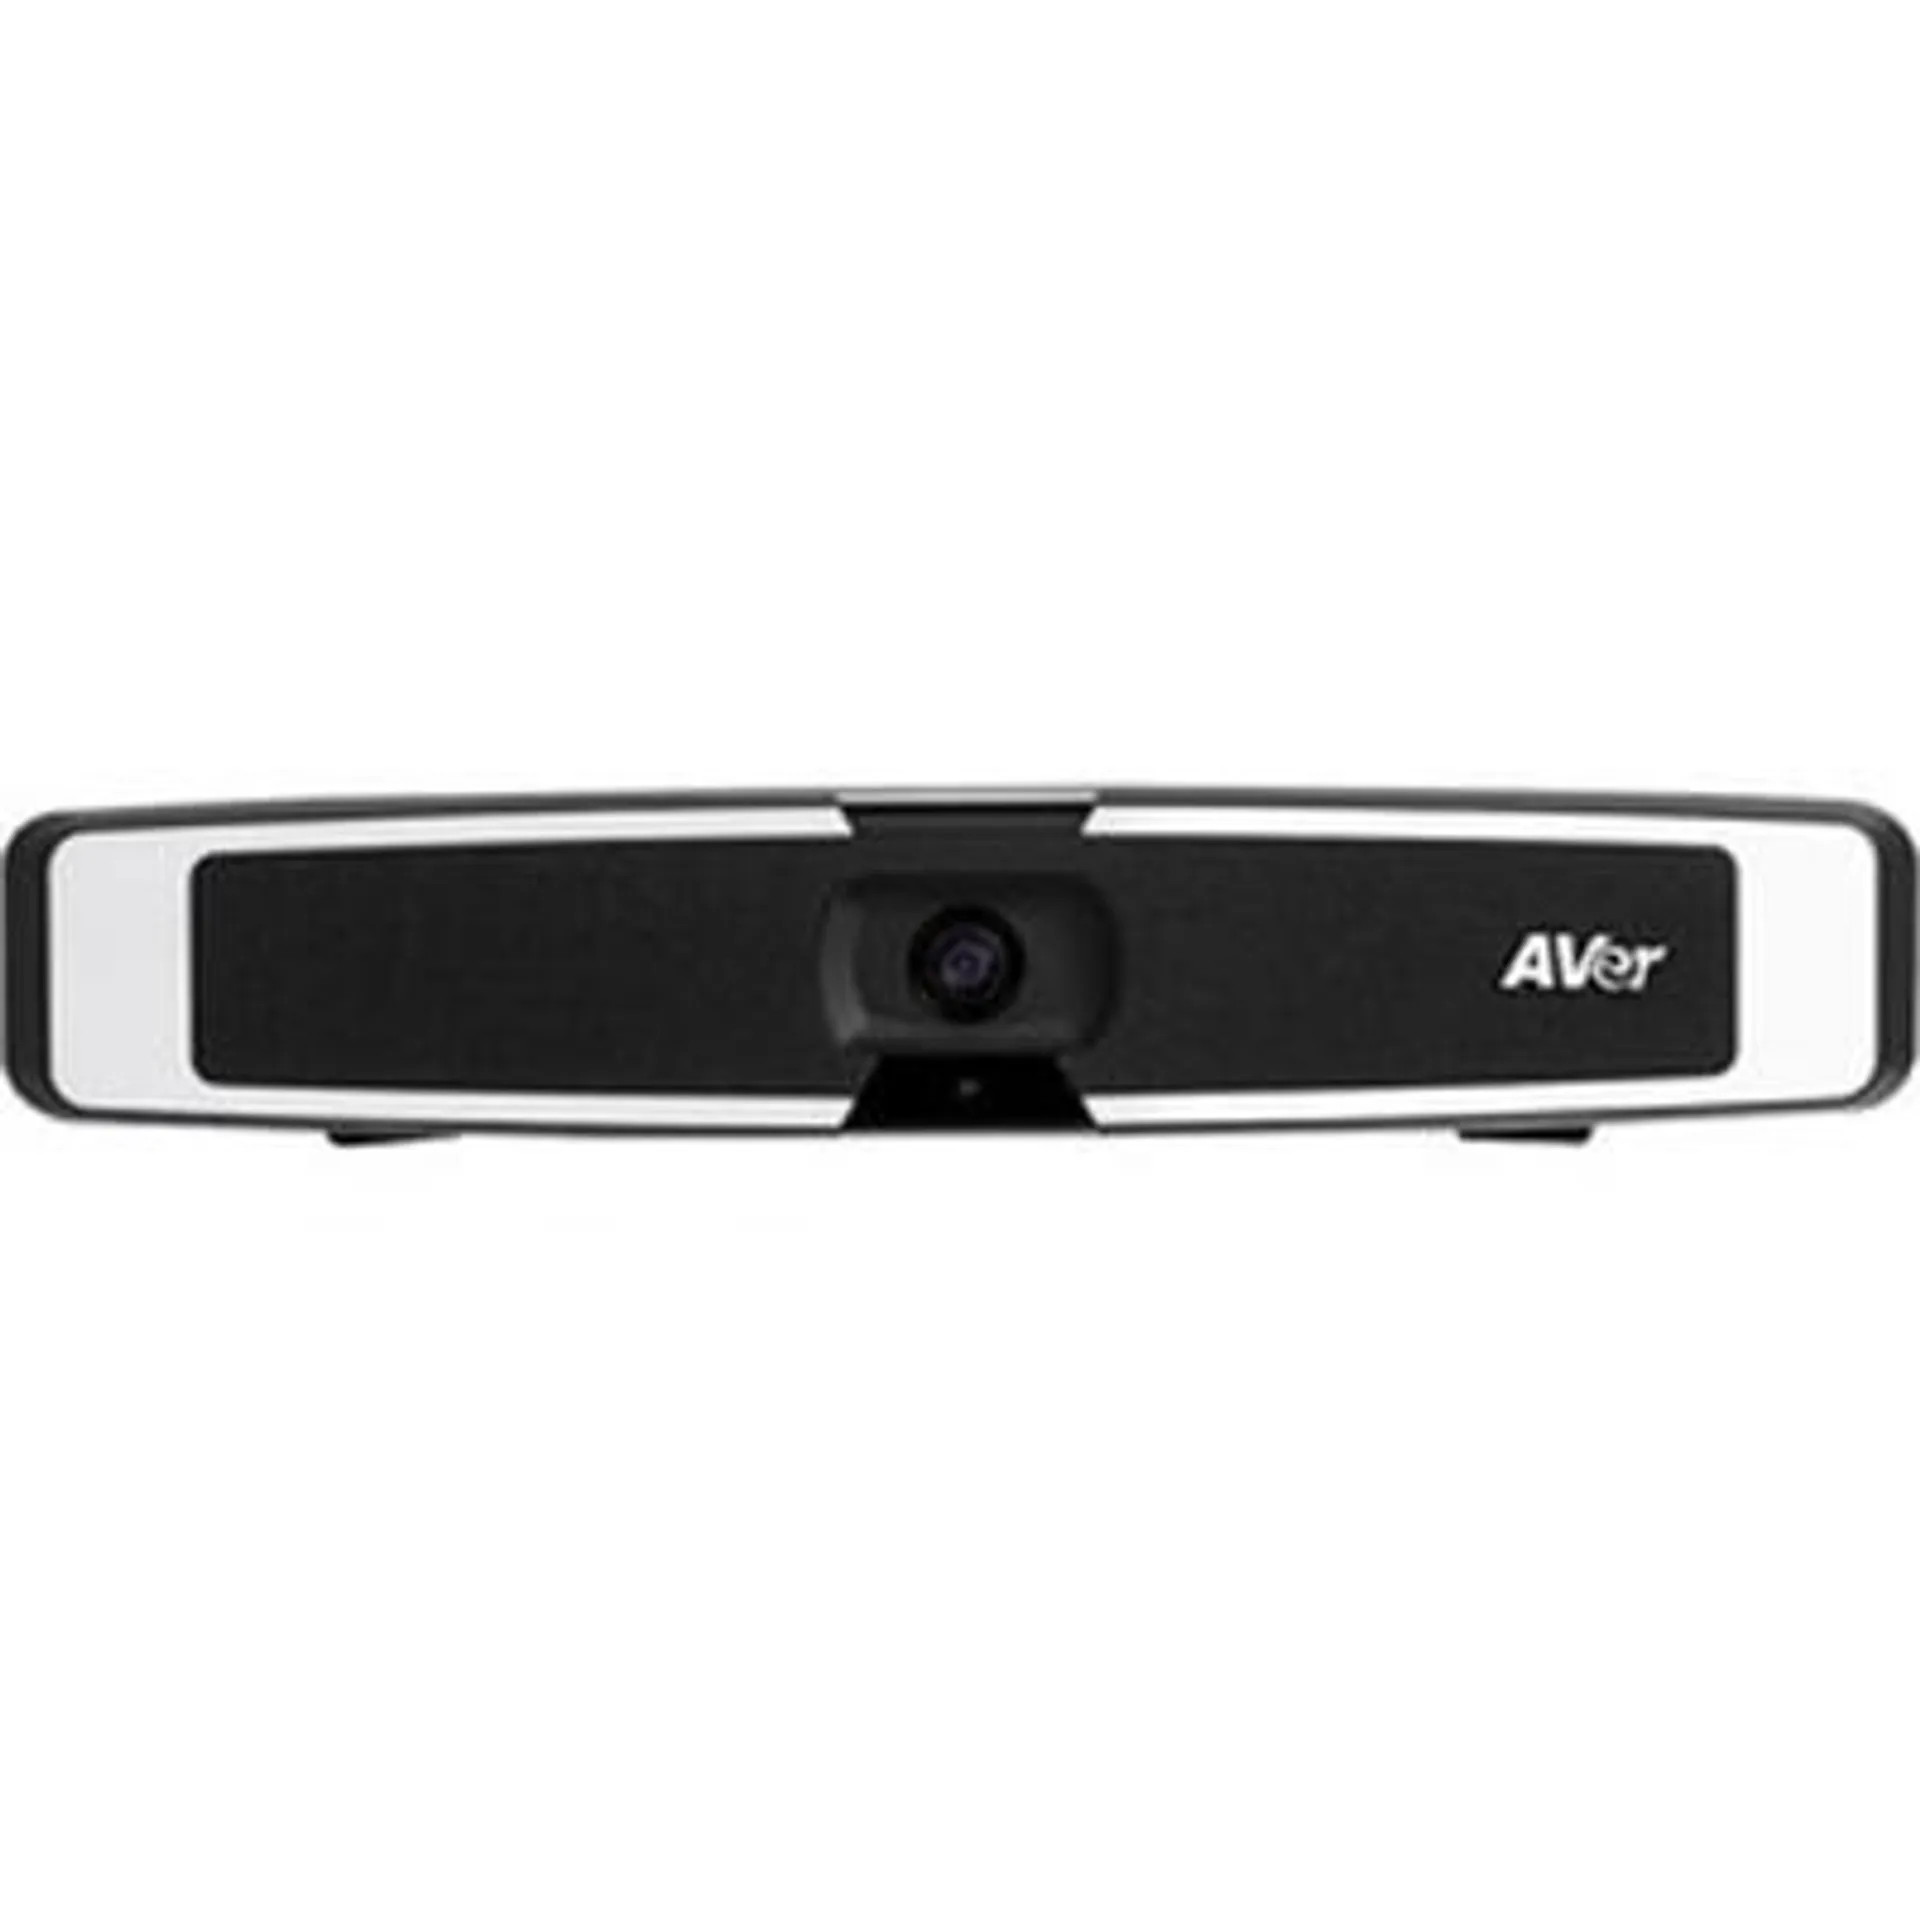 AVer Information VB130 Conference Videobar